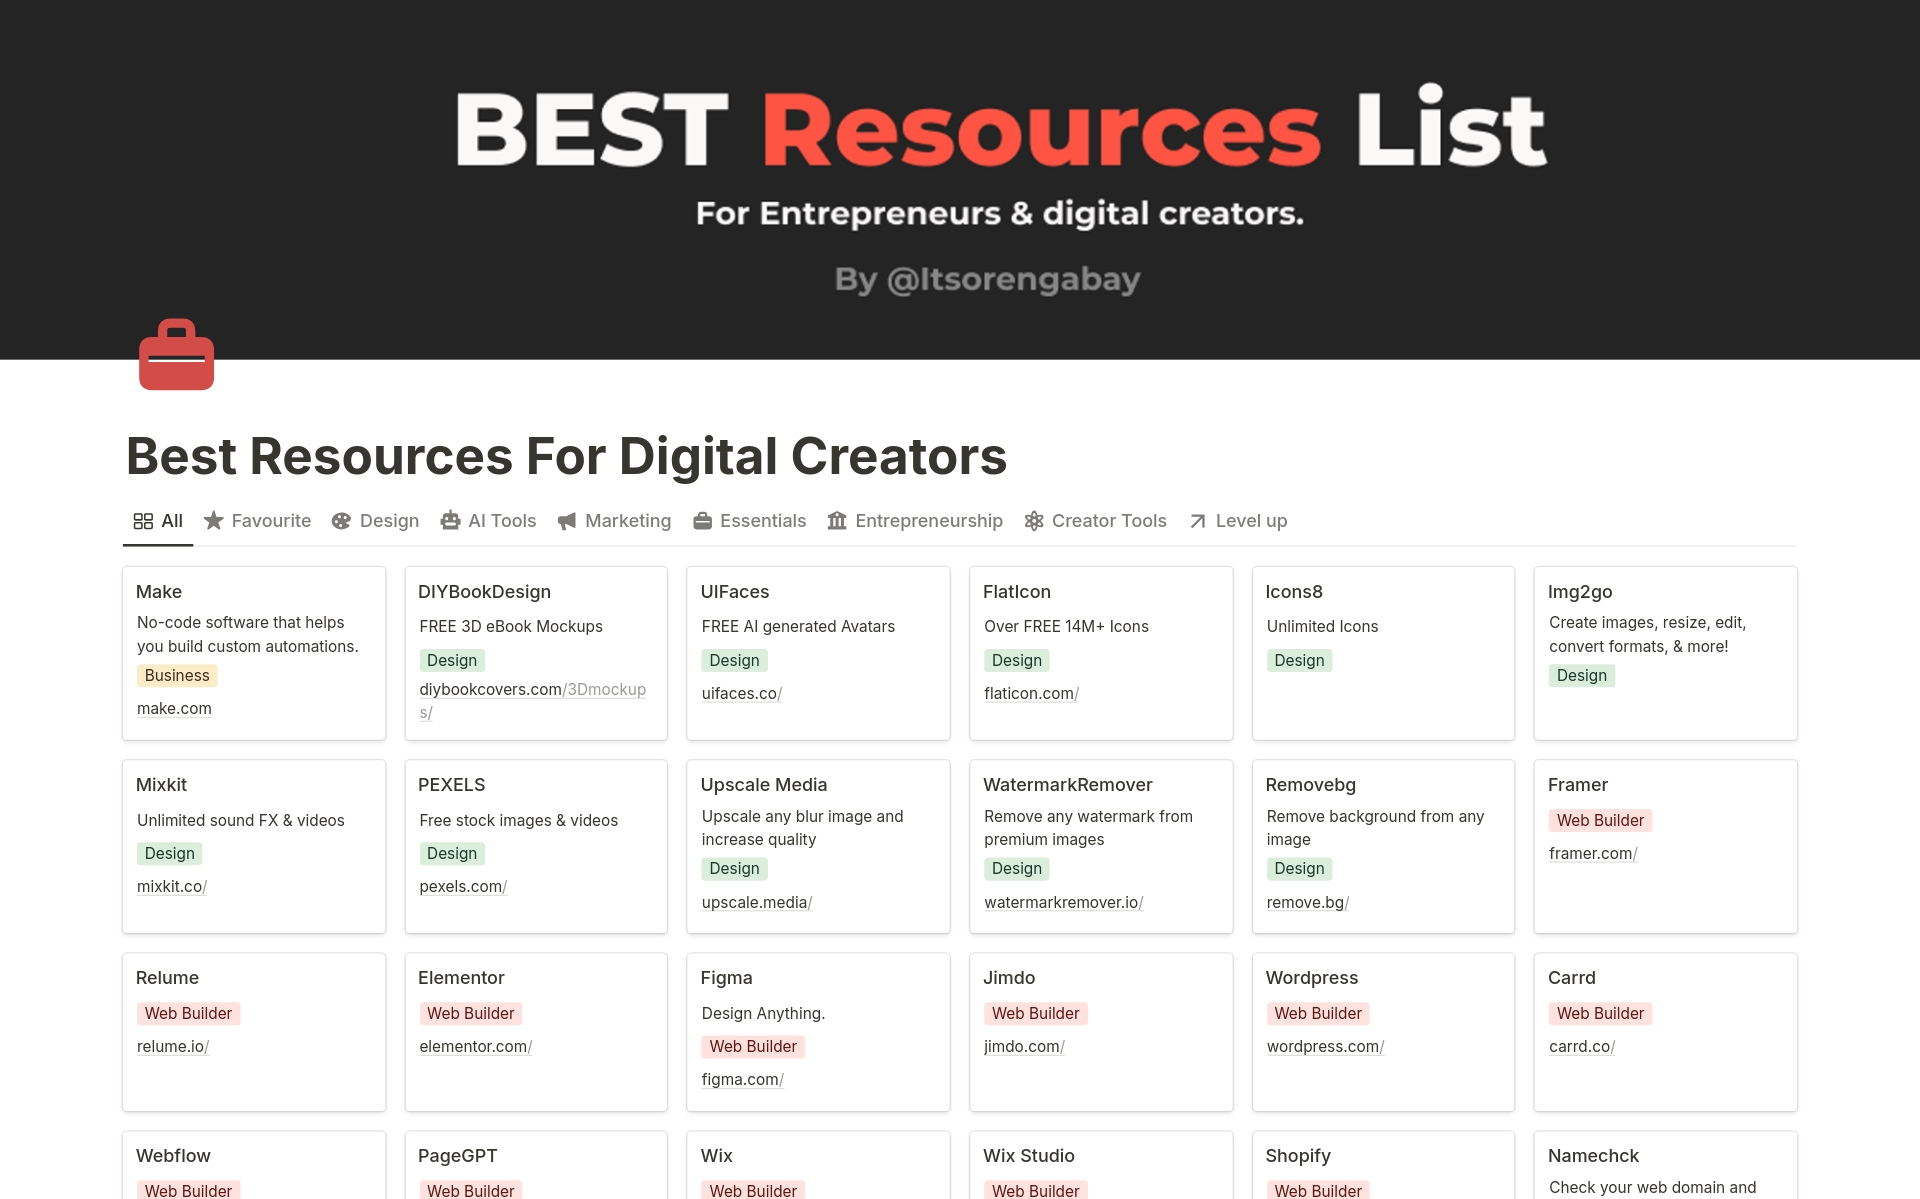 Aperçu du modèle de Best Resources for Digital Creators